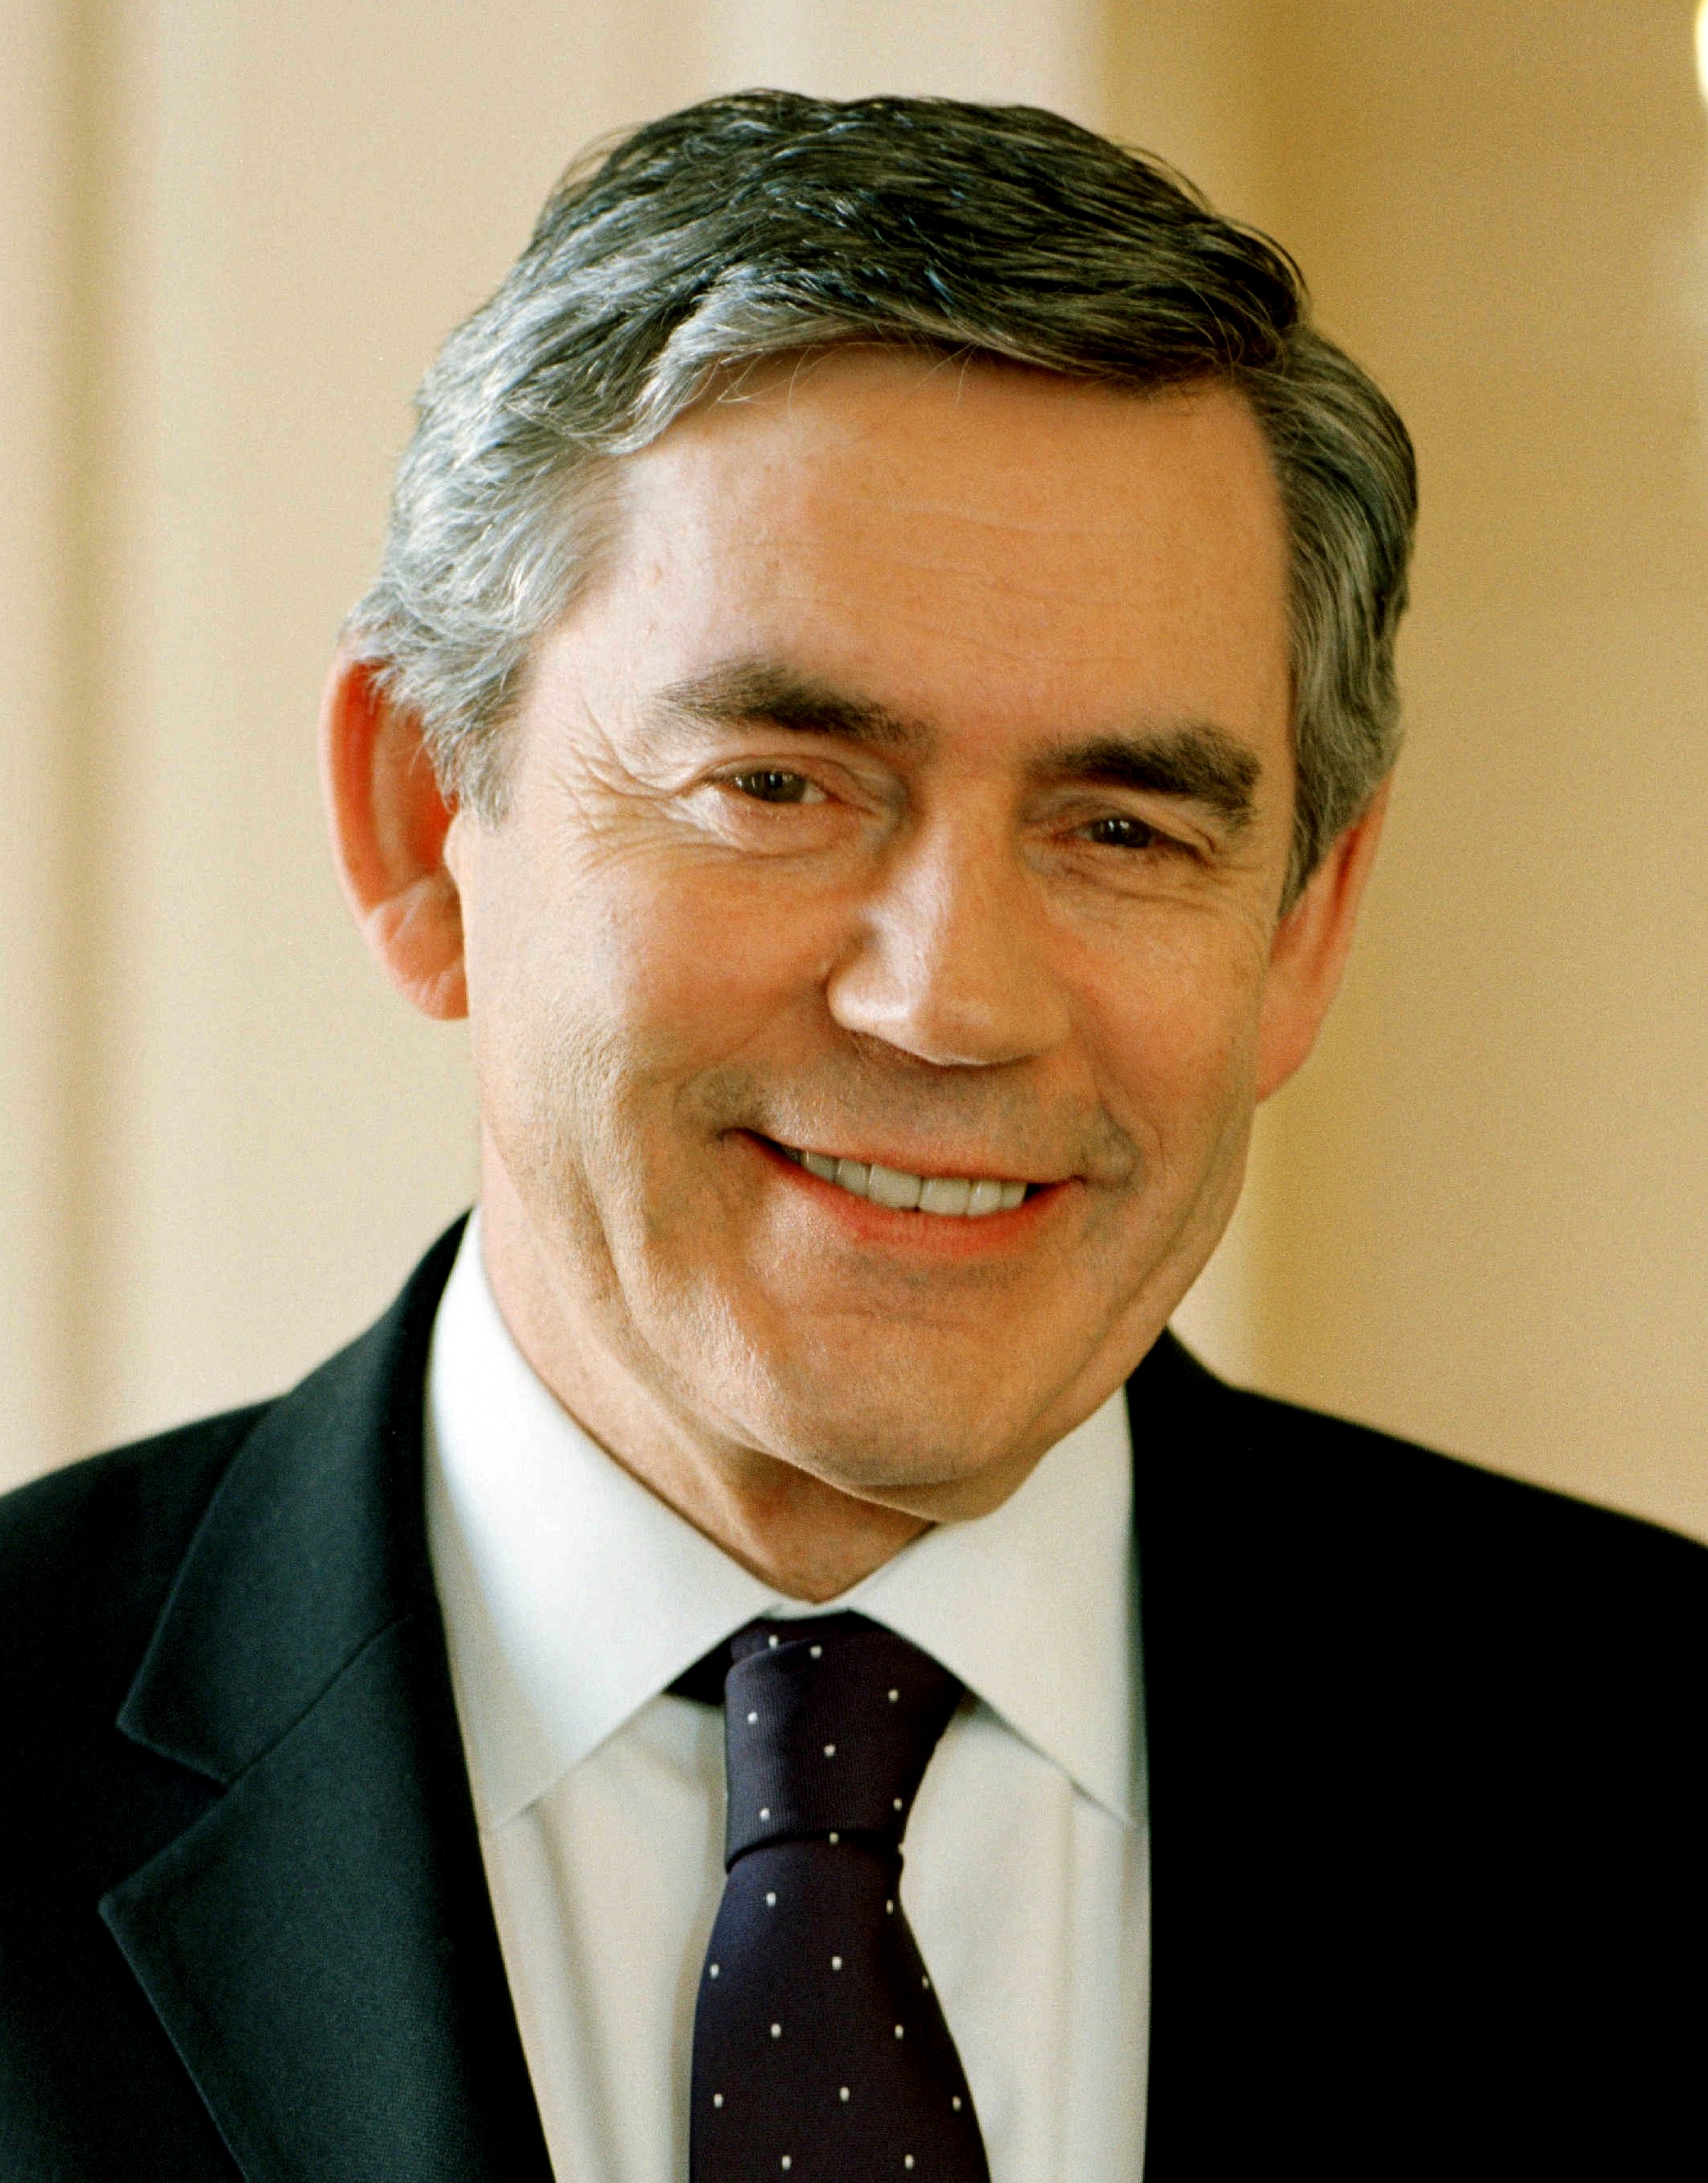 auteur Gordon Brown de la citation La Grande-Bretagne devrait être le Centre numéro un mondial de recherche sur les cellules génétiques et souches, s'appuyant sur notre régime de réglementation mondial dans la région.